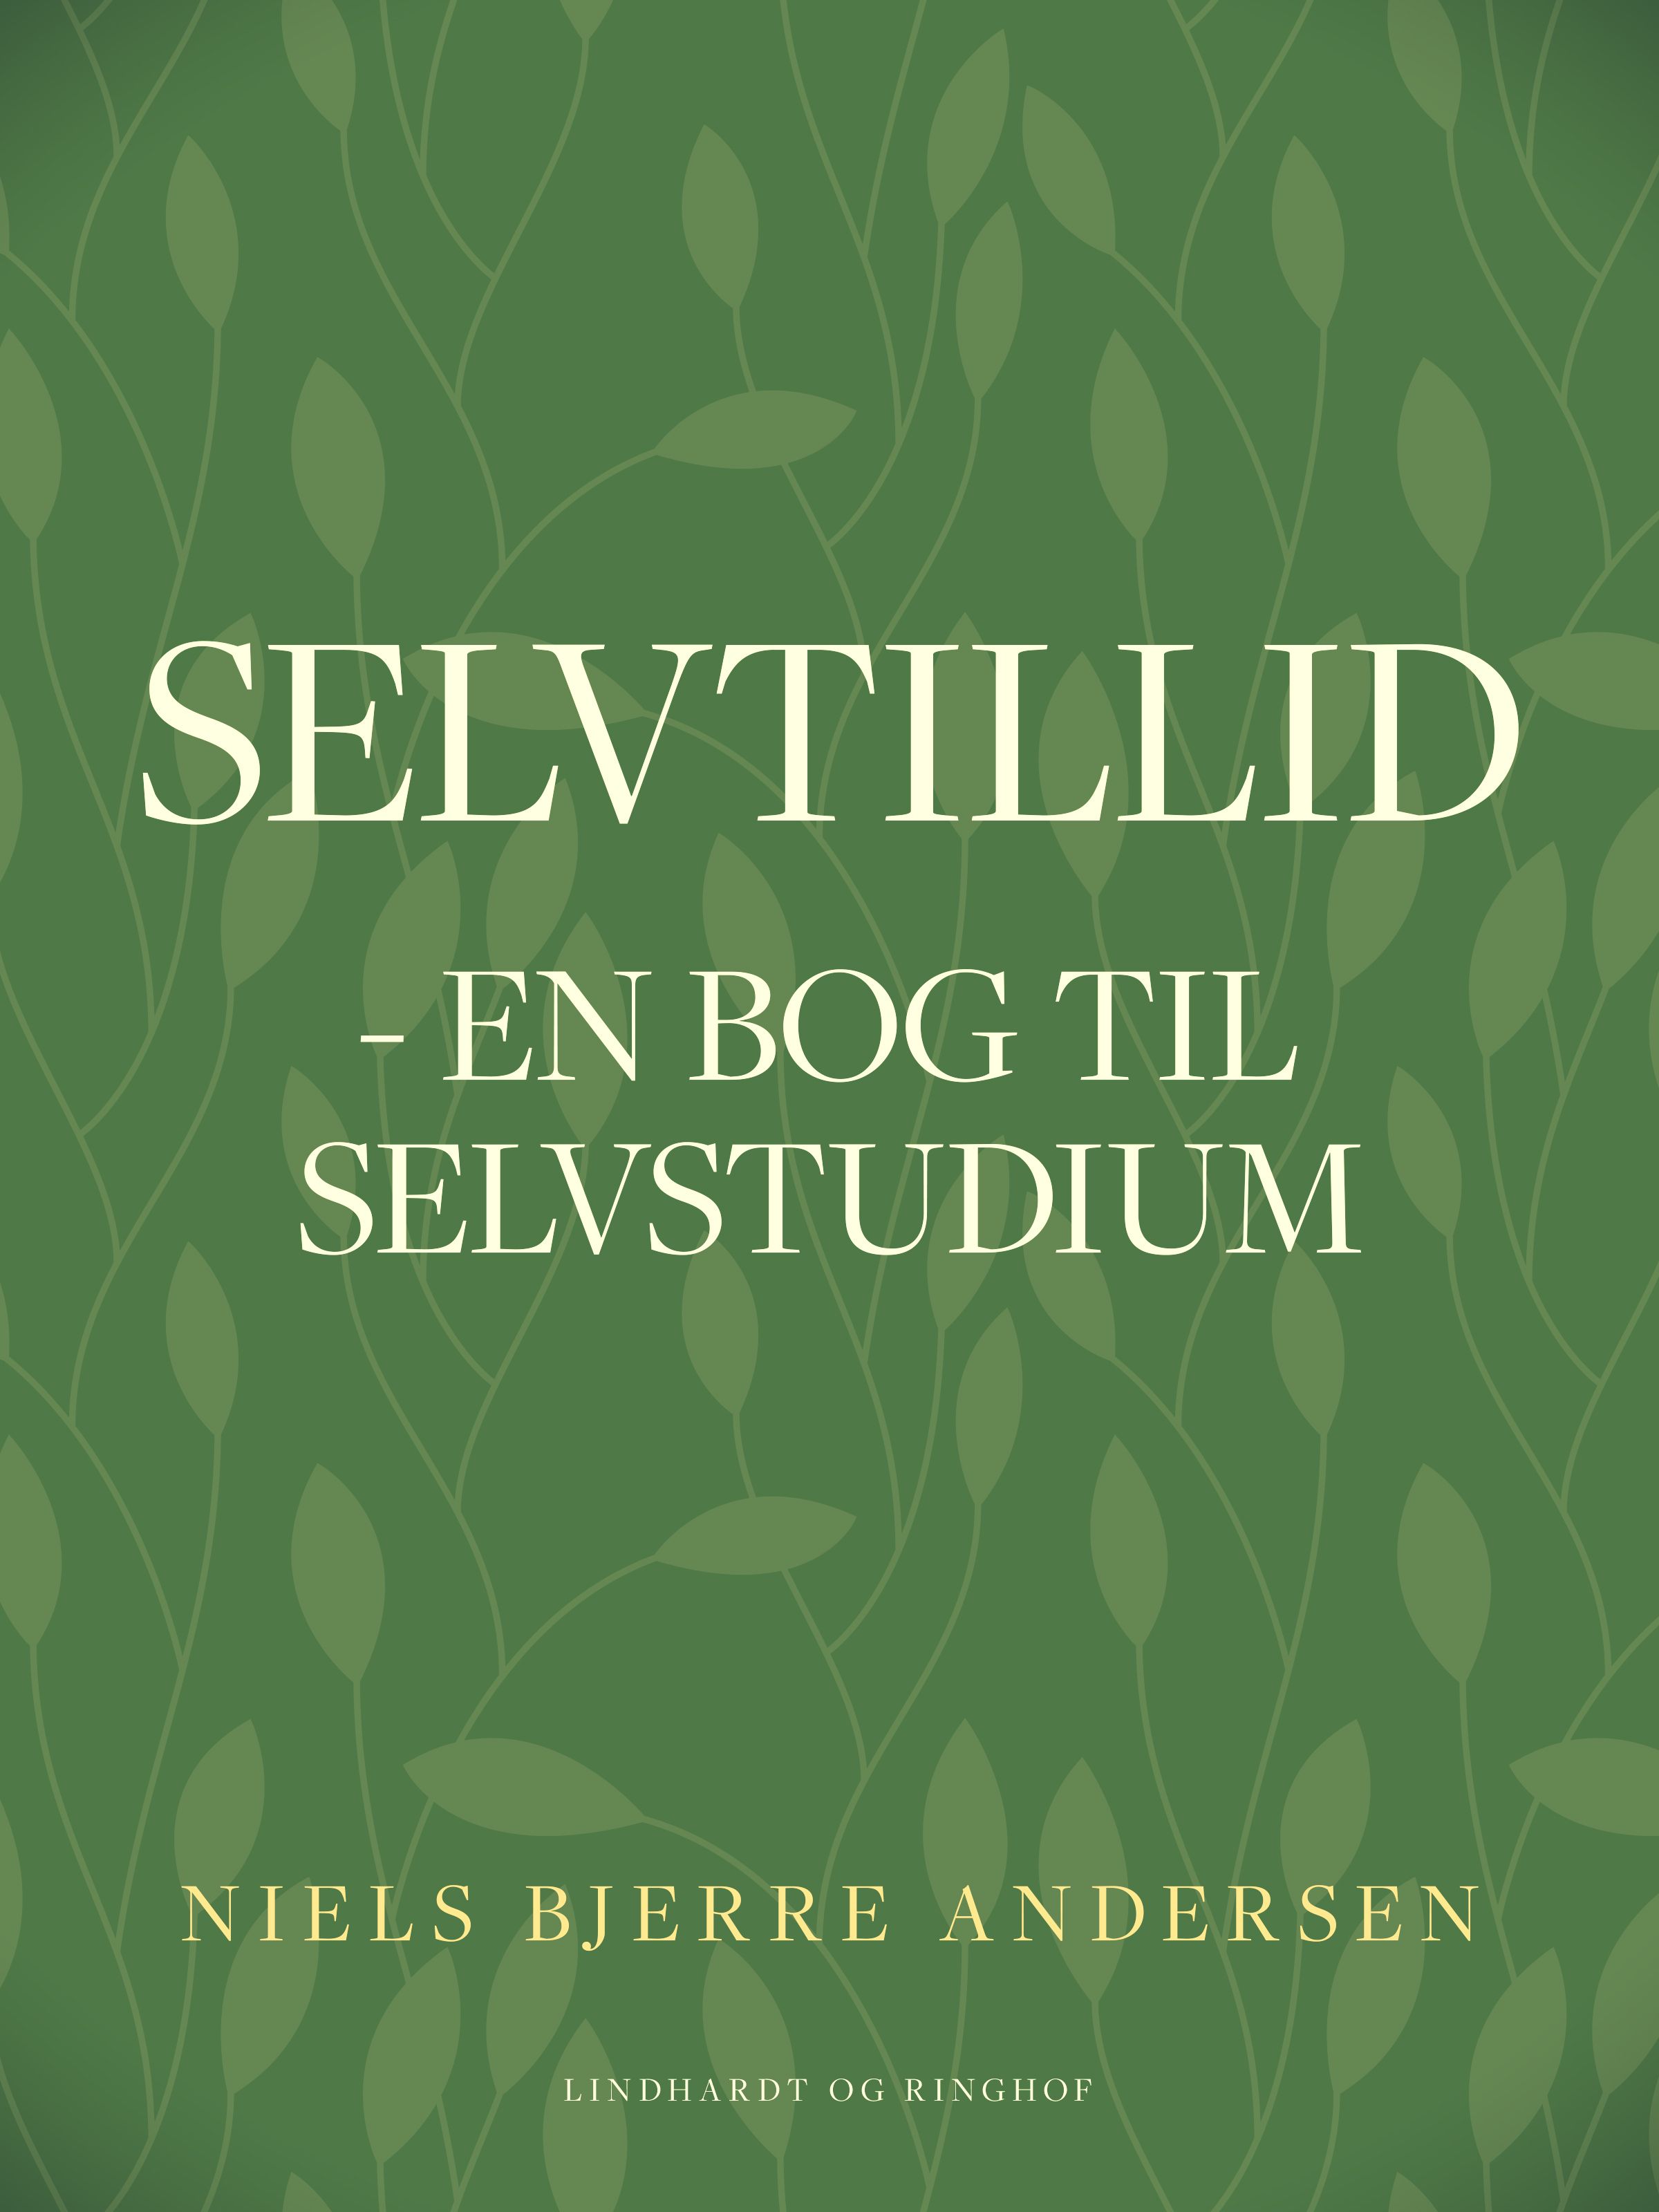 Selvtillid: en bog til selvstudium, eBook by Niels Bjerre Andersen